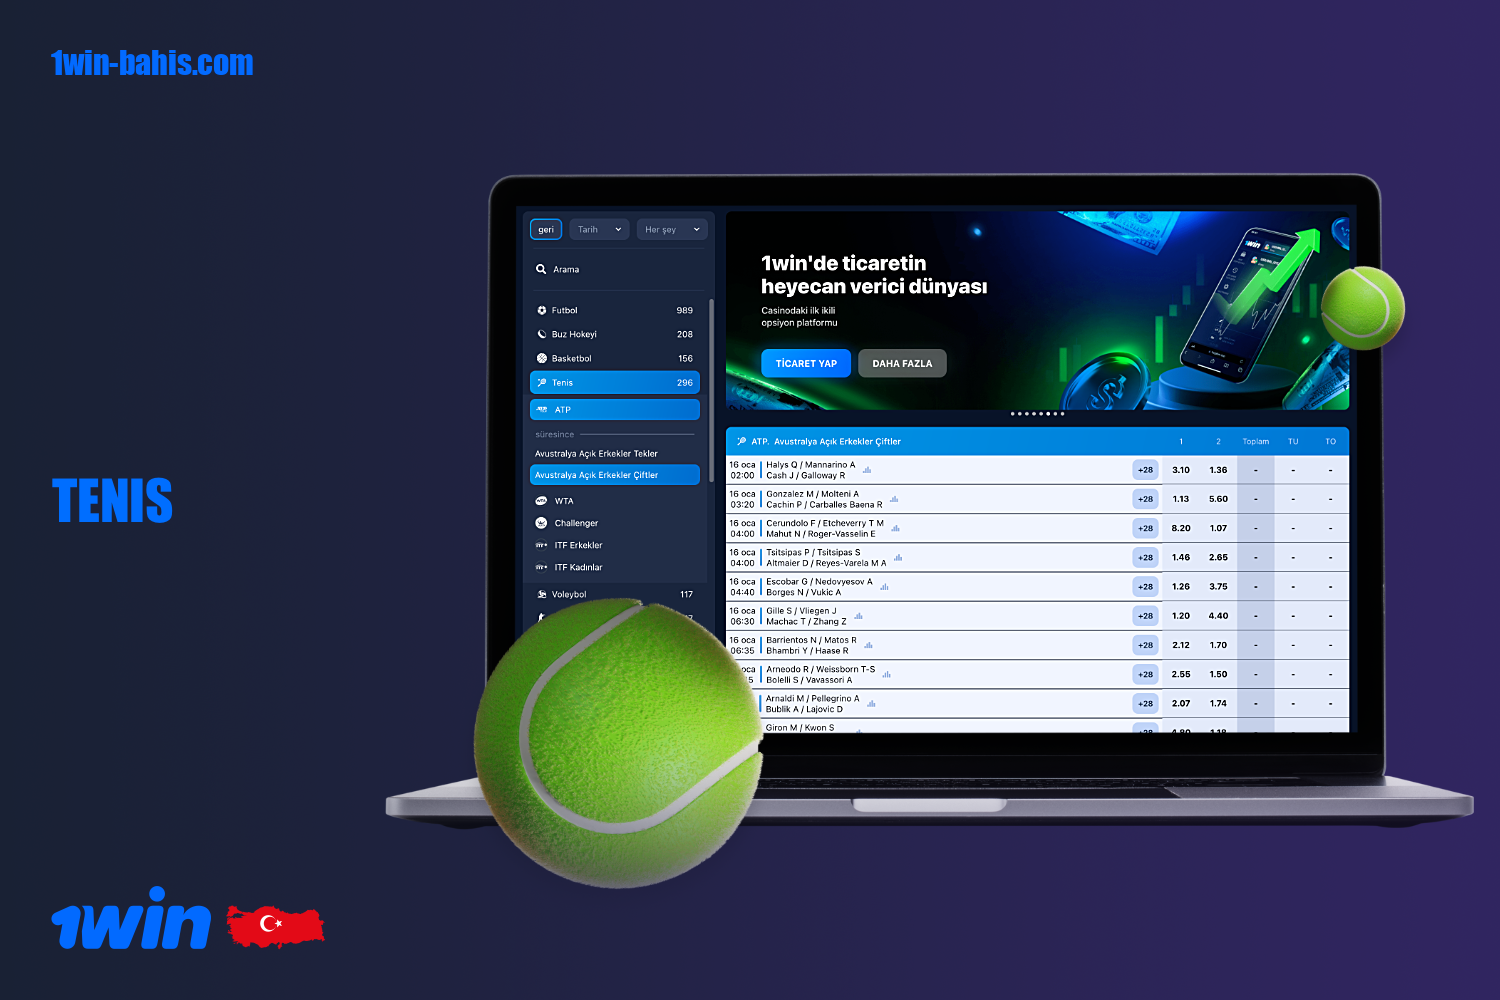 Türkiye'den 1win kullanıcıları için çeşitli tenis bahisleri mevcuttur